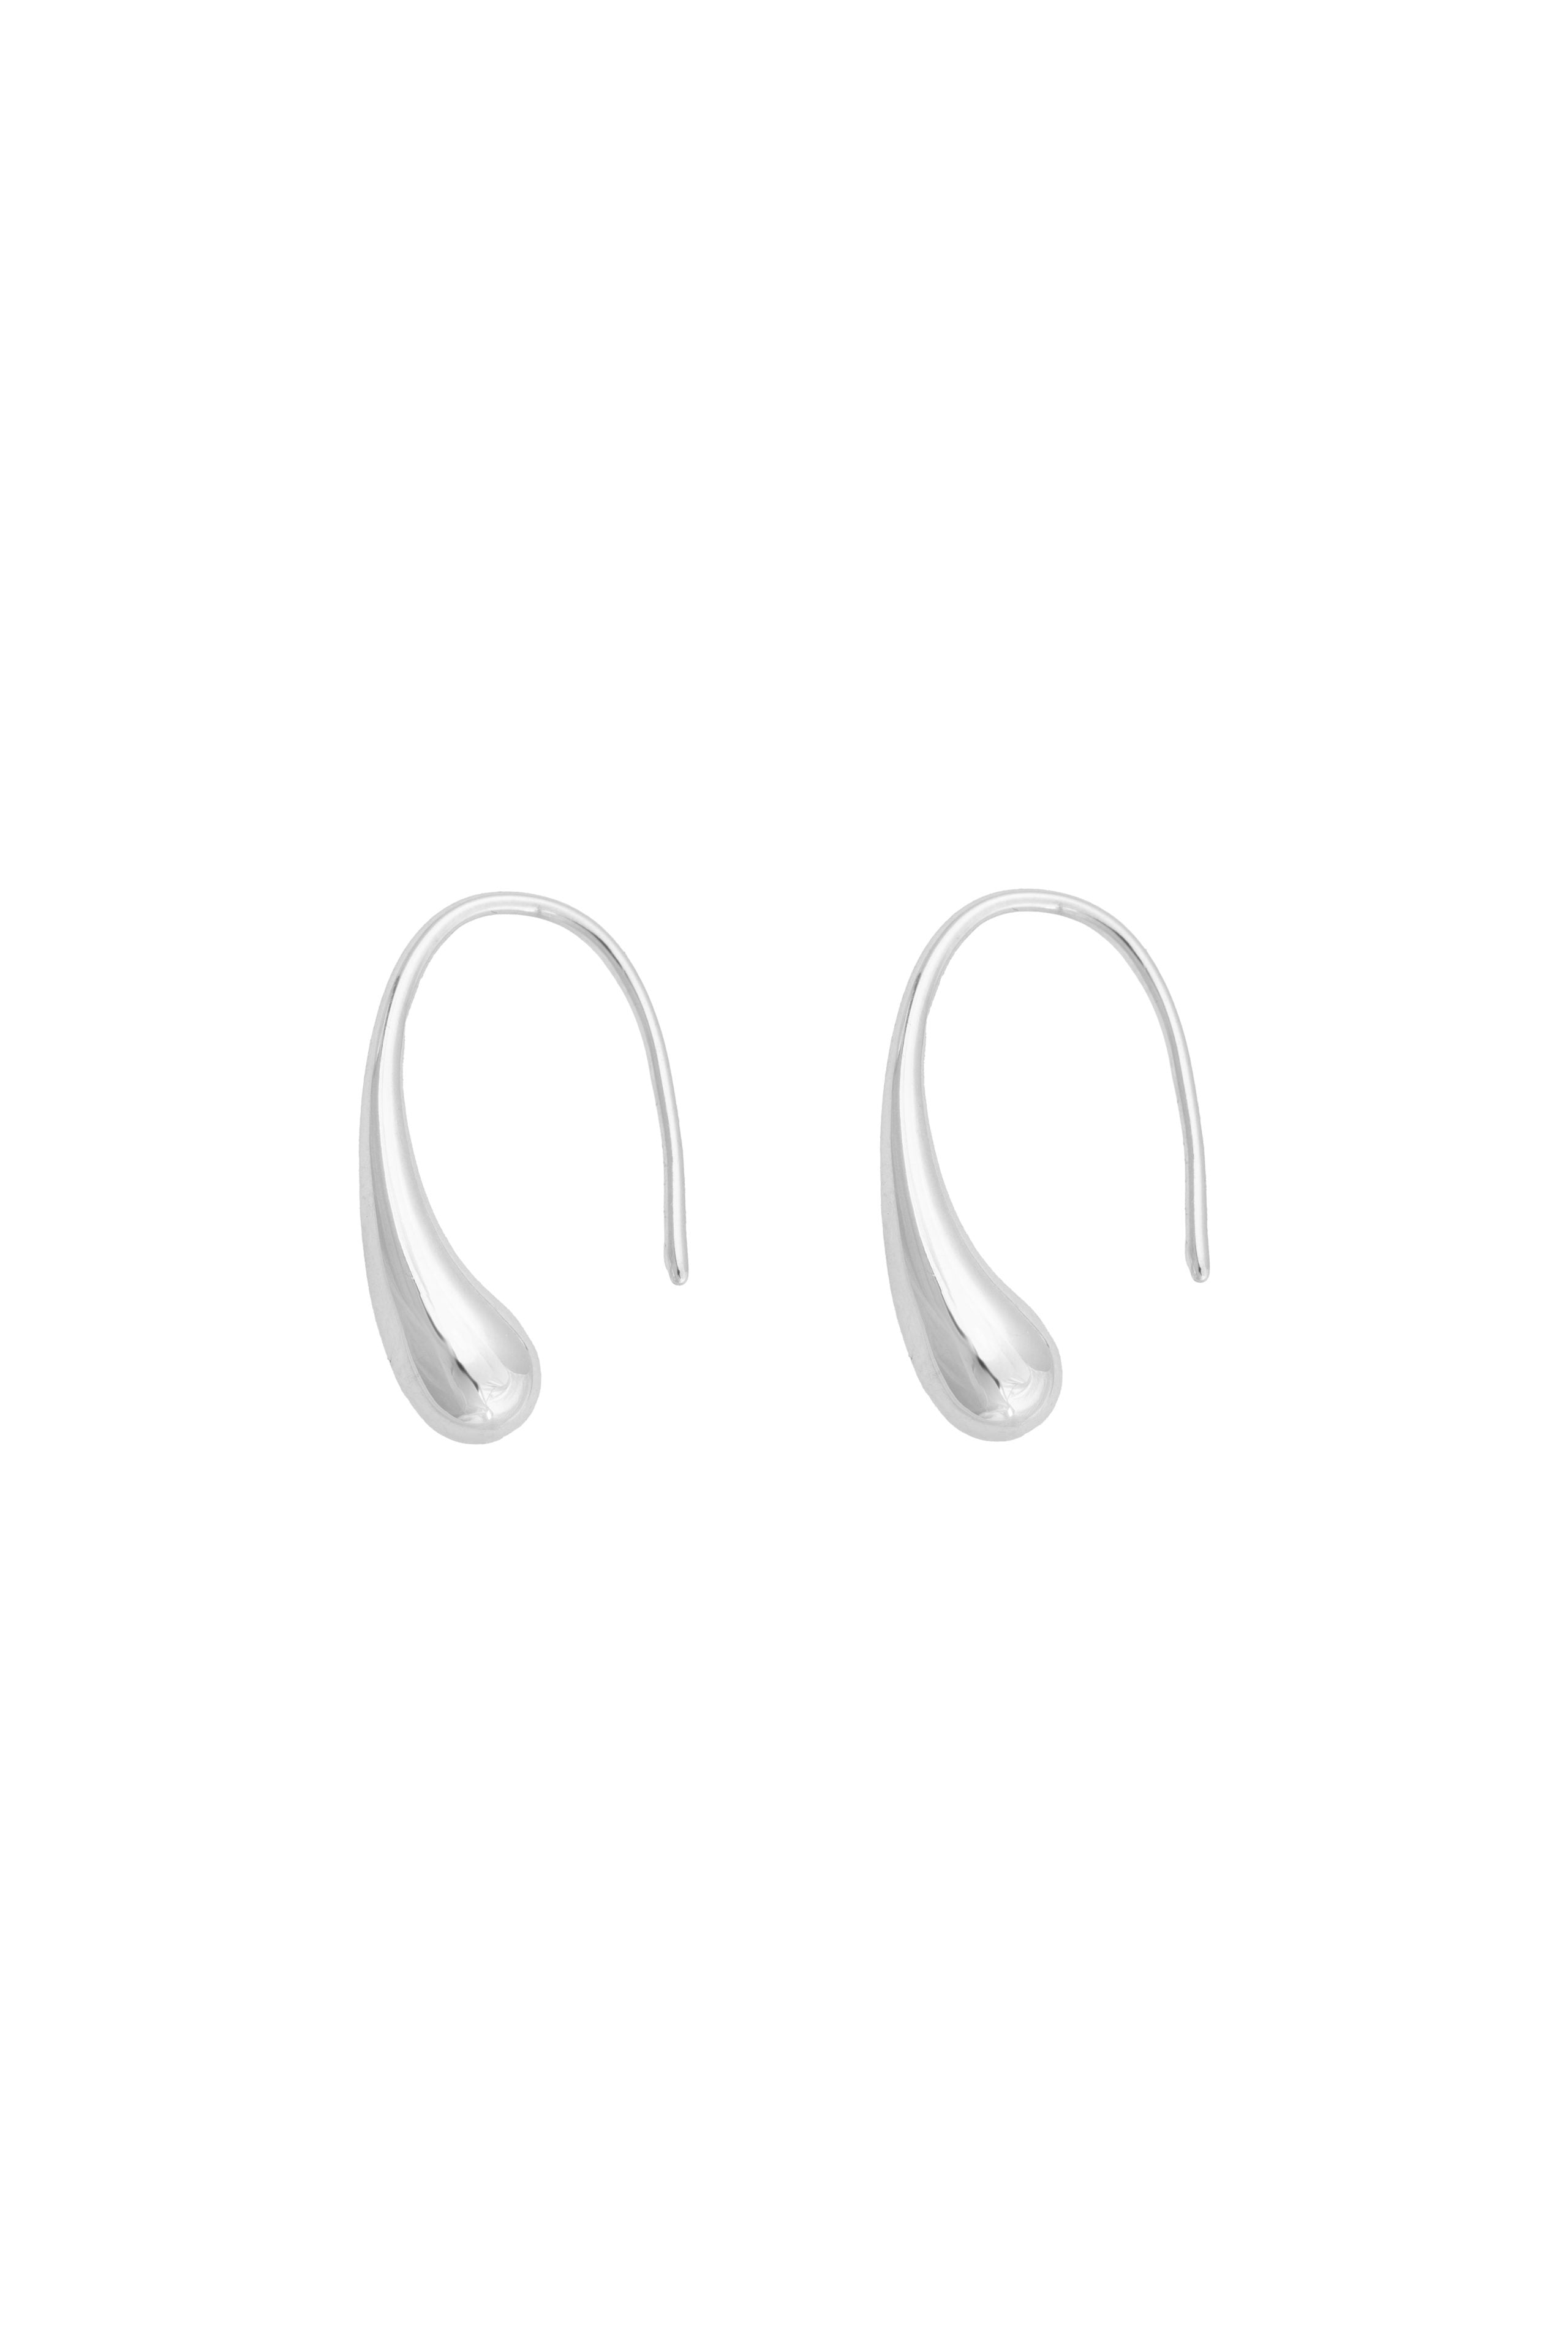 Melt Earrings - Silver